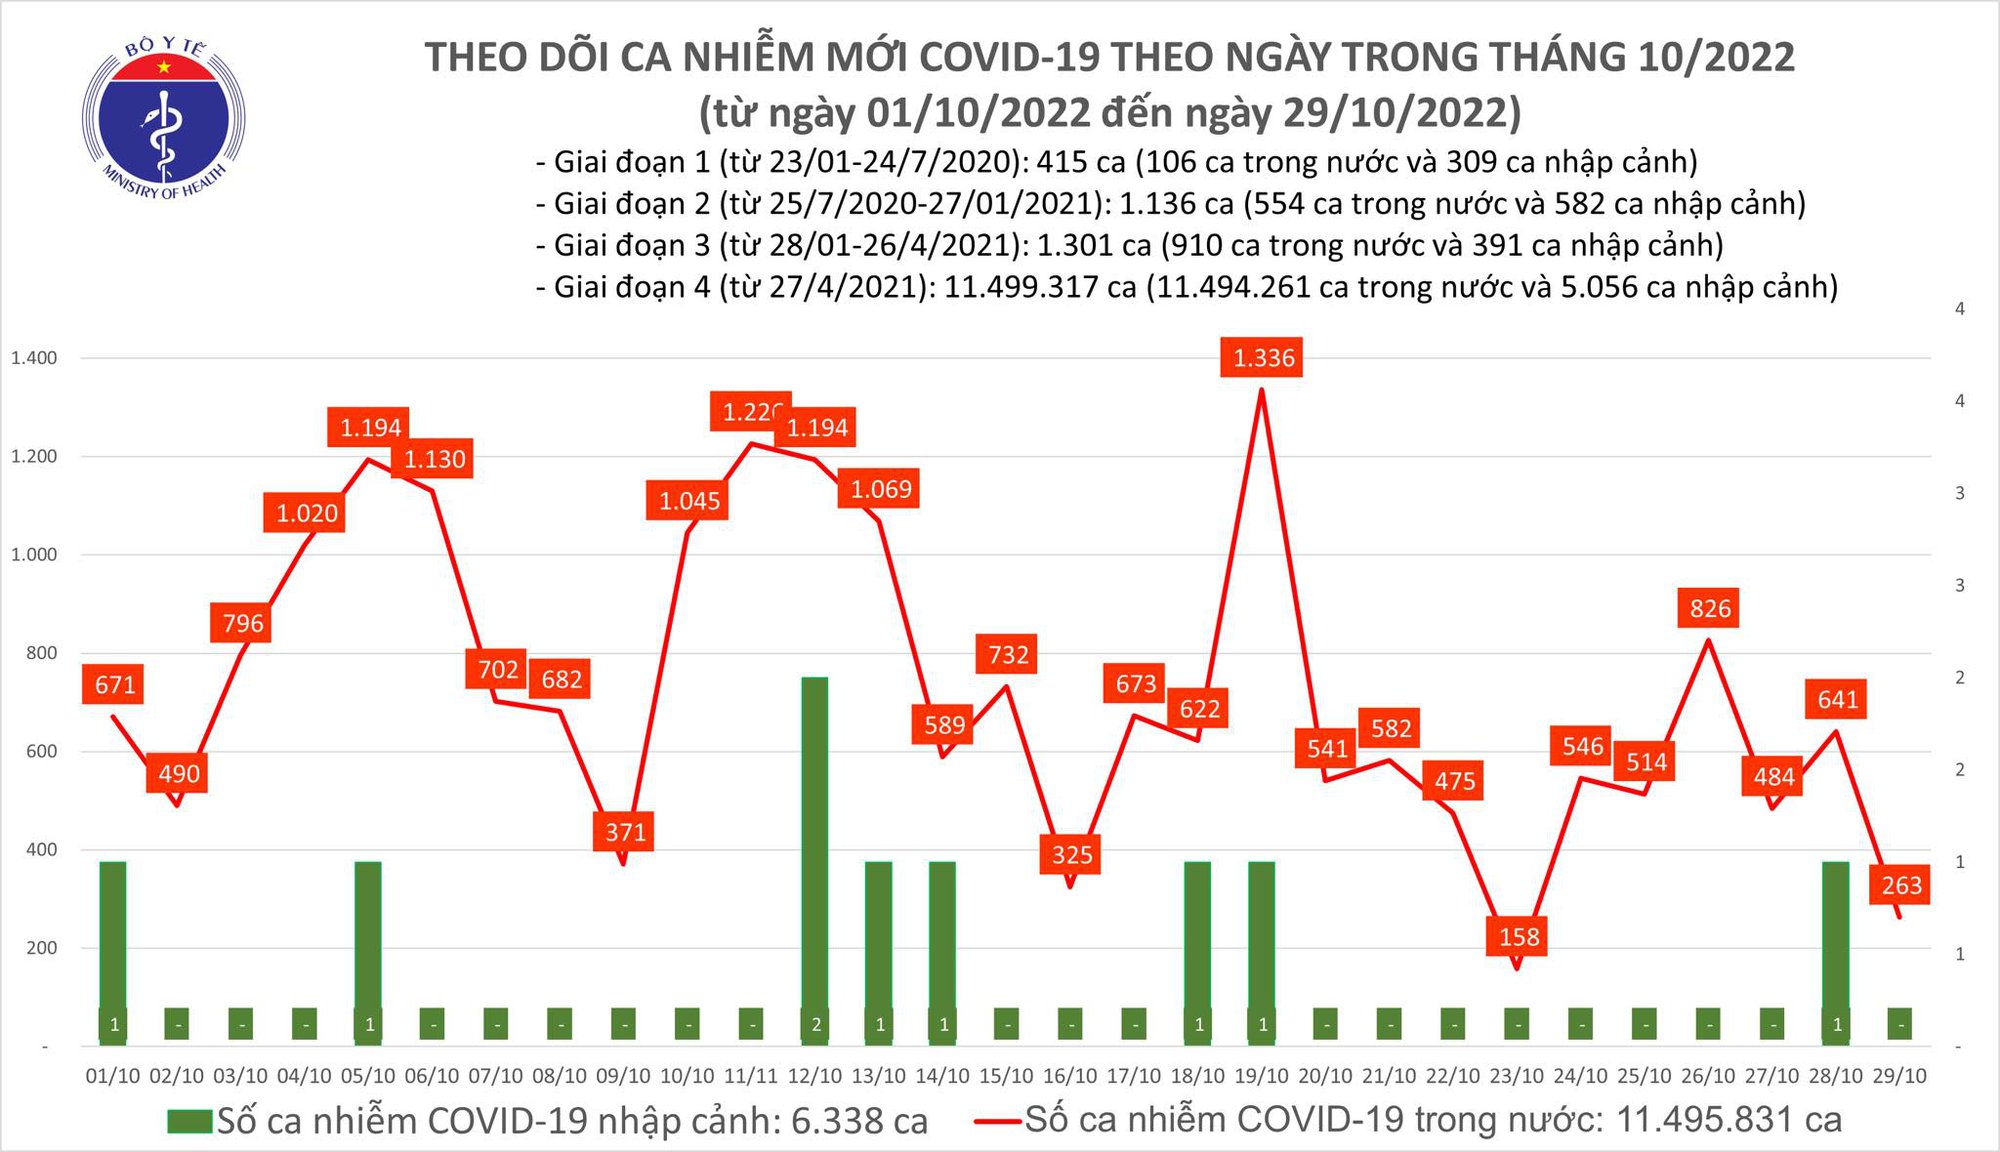 Ngày 29/10: Có 263 ca COVID-19, thấp nhất gần 1 năm qua; 1 bệnh nhân ở Tây Ninh tử vong  - Ảnh 1.